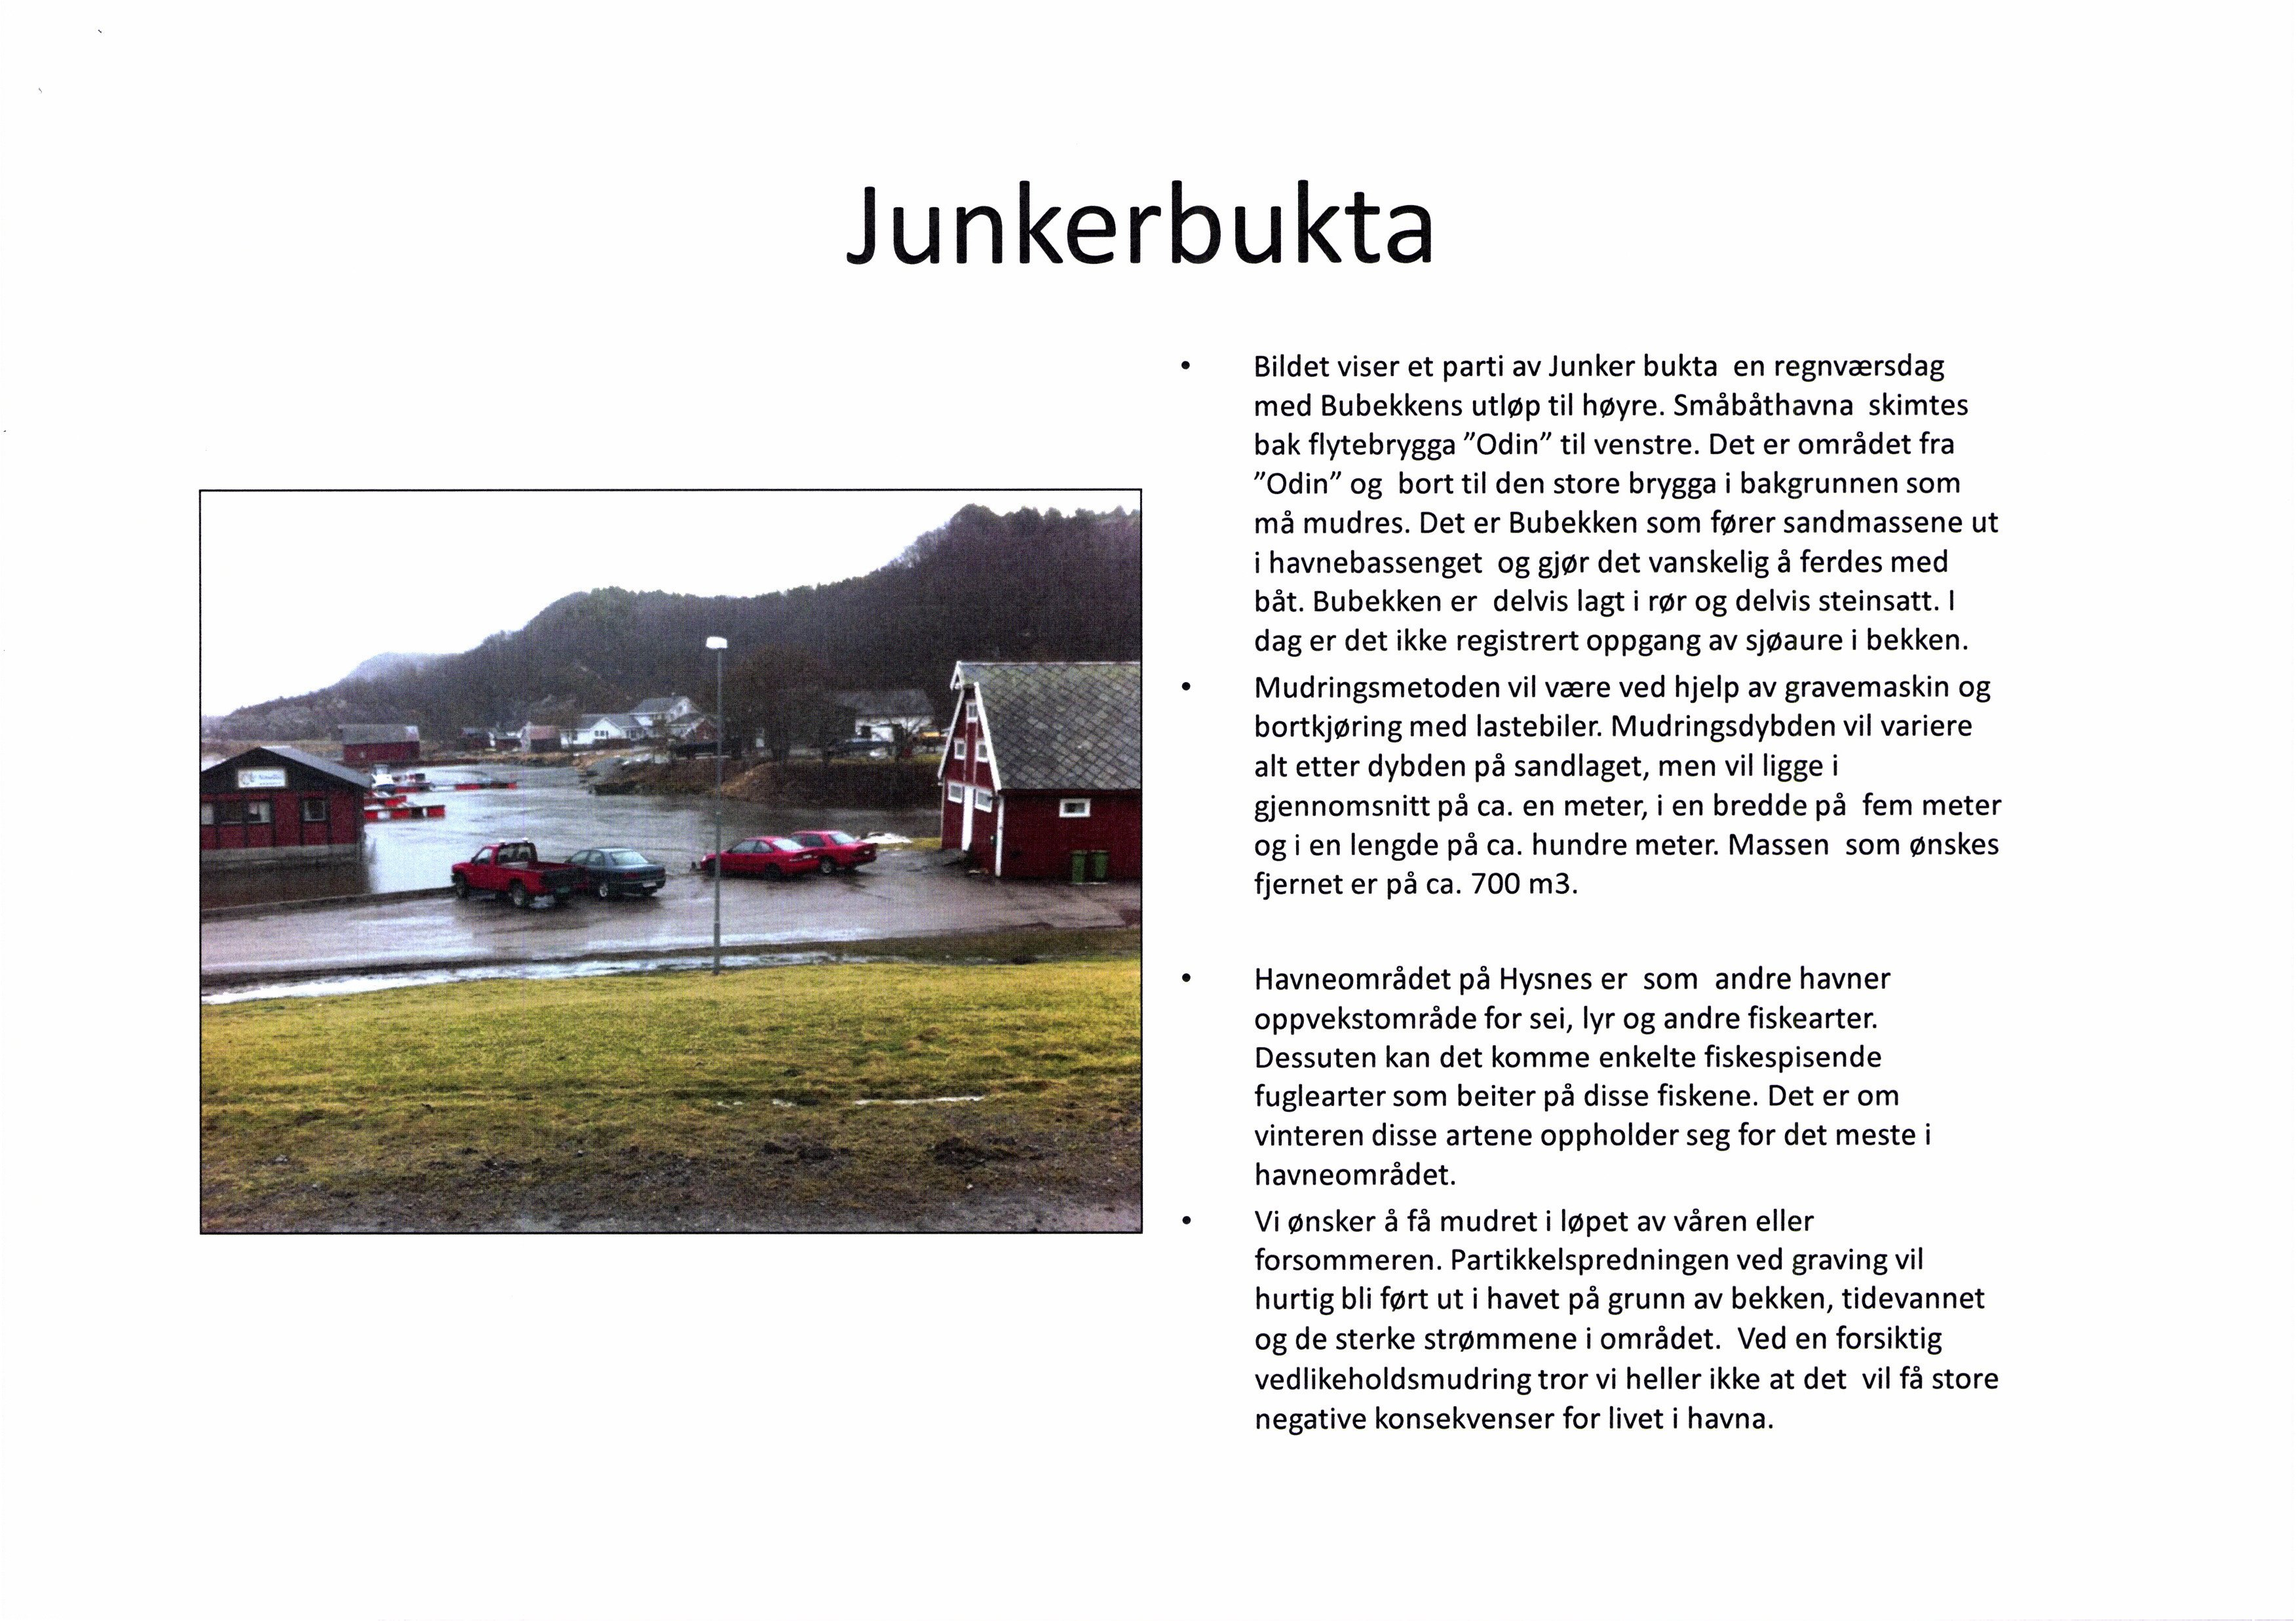 Junkerbukta. Bildet viser et parti av Junker bukta en regnværsdag med Bubekkensutløp til høyre. Småbåthavna skimtes bak flytebrygga "Odin" til venstre.